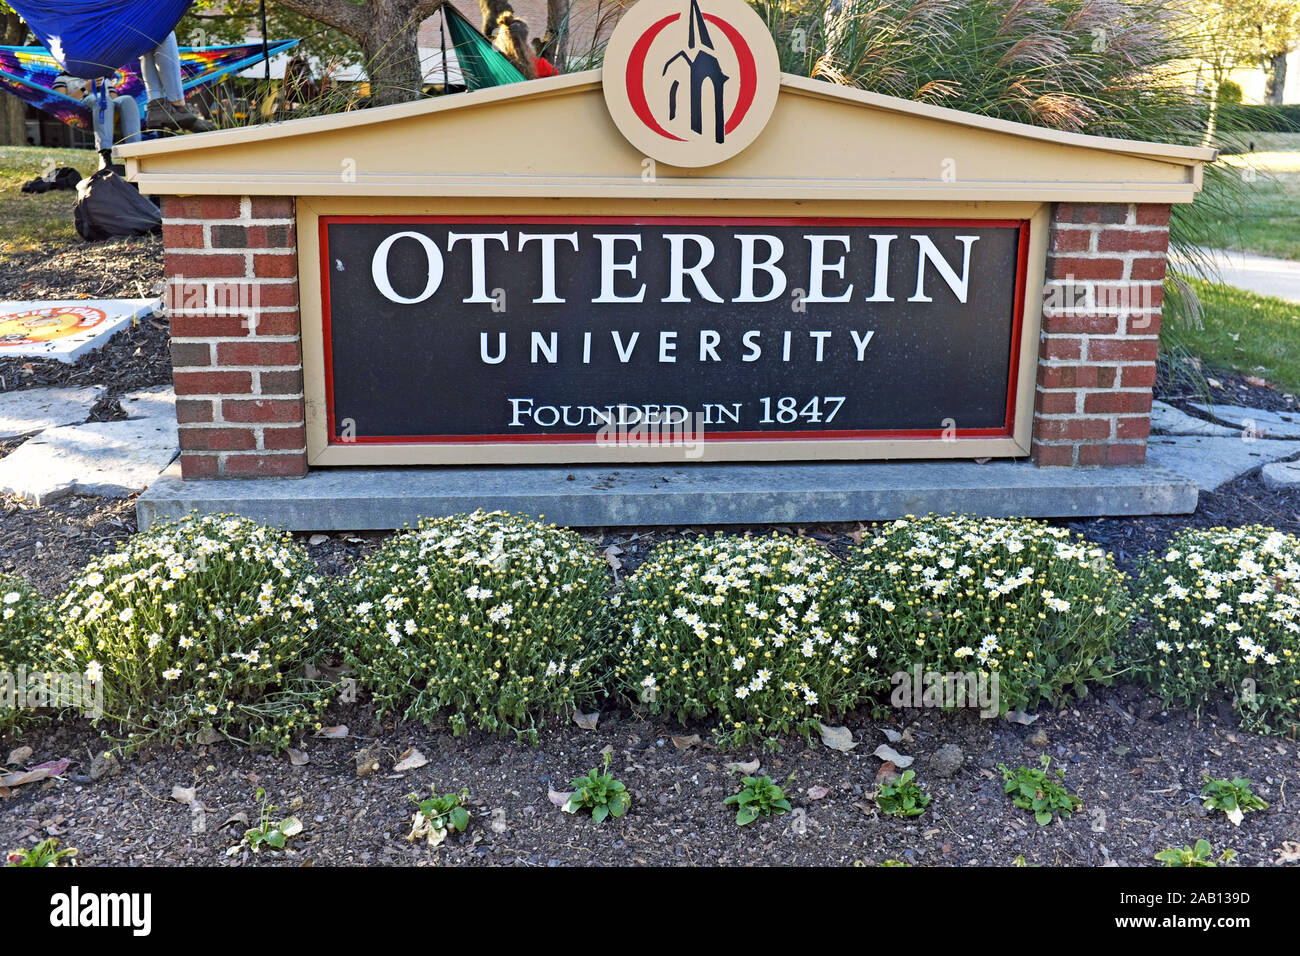 Otterbein Universität, 1847 gegründet, ist ein Liberal Arts College, dass Regional akkreditiert ist und in Westerville, Ohio in der Nähe von Columbus befindet. Stockfoto